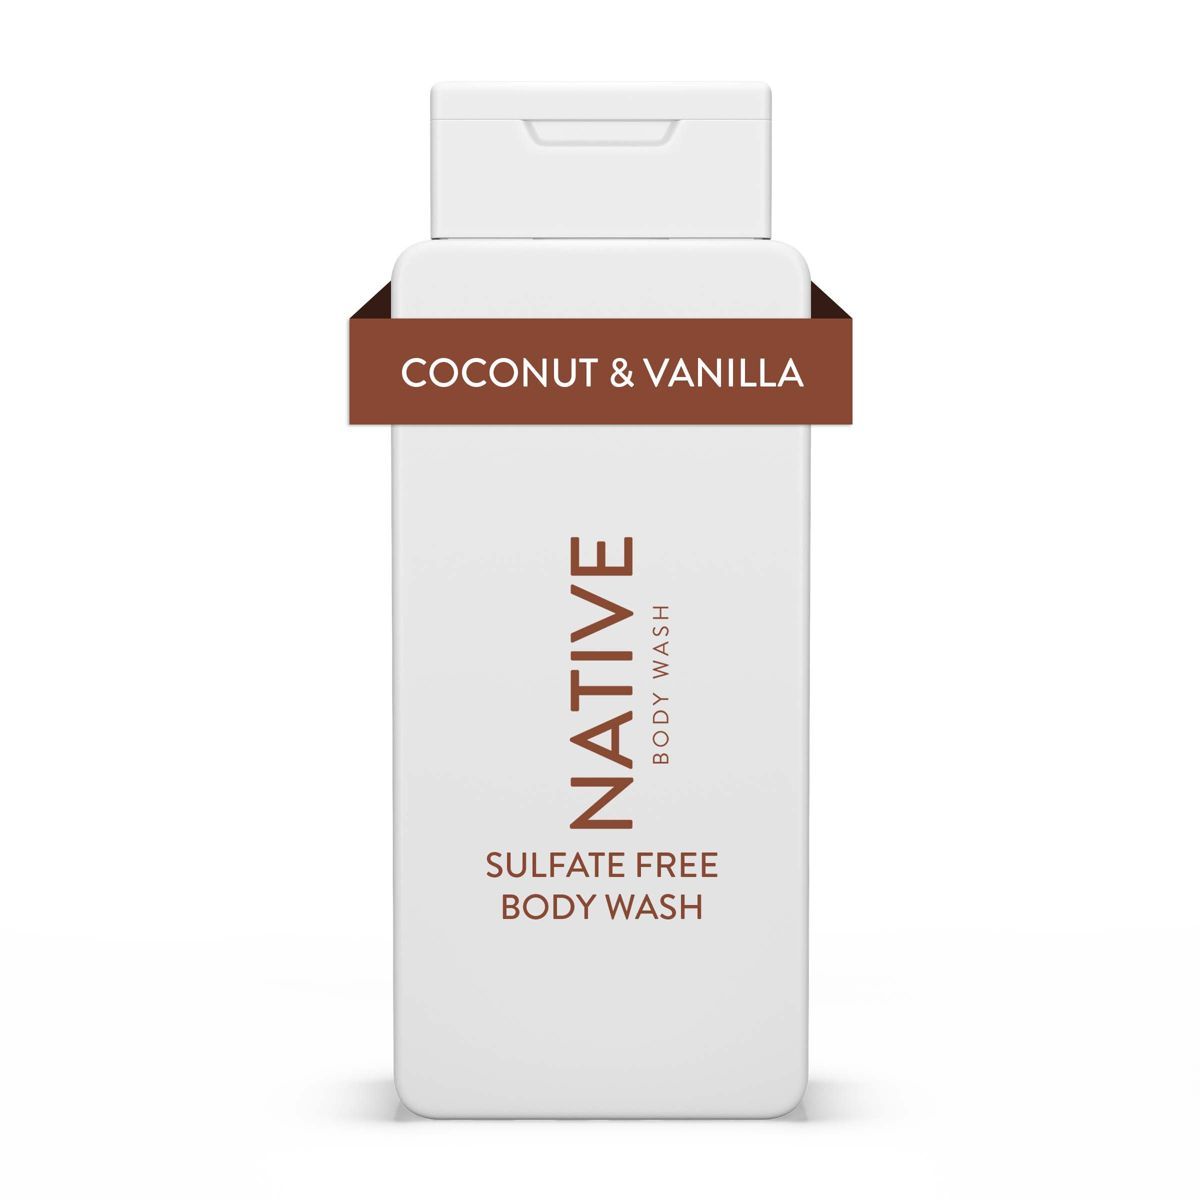 Native Body Wash - Coconut & Vanilla - Sulfate Free - 18 fl oz | Target